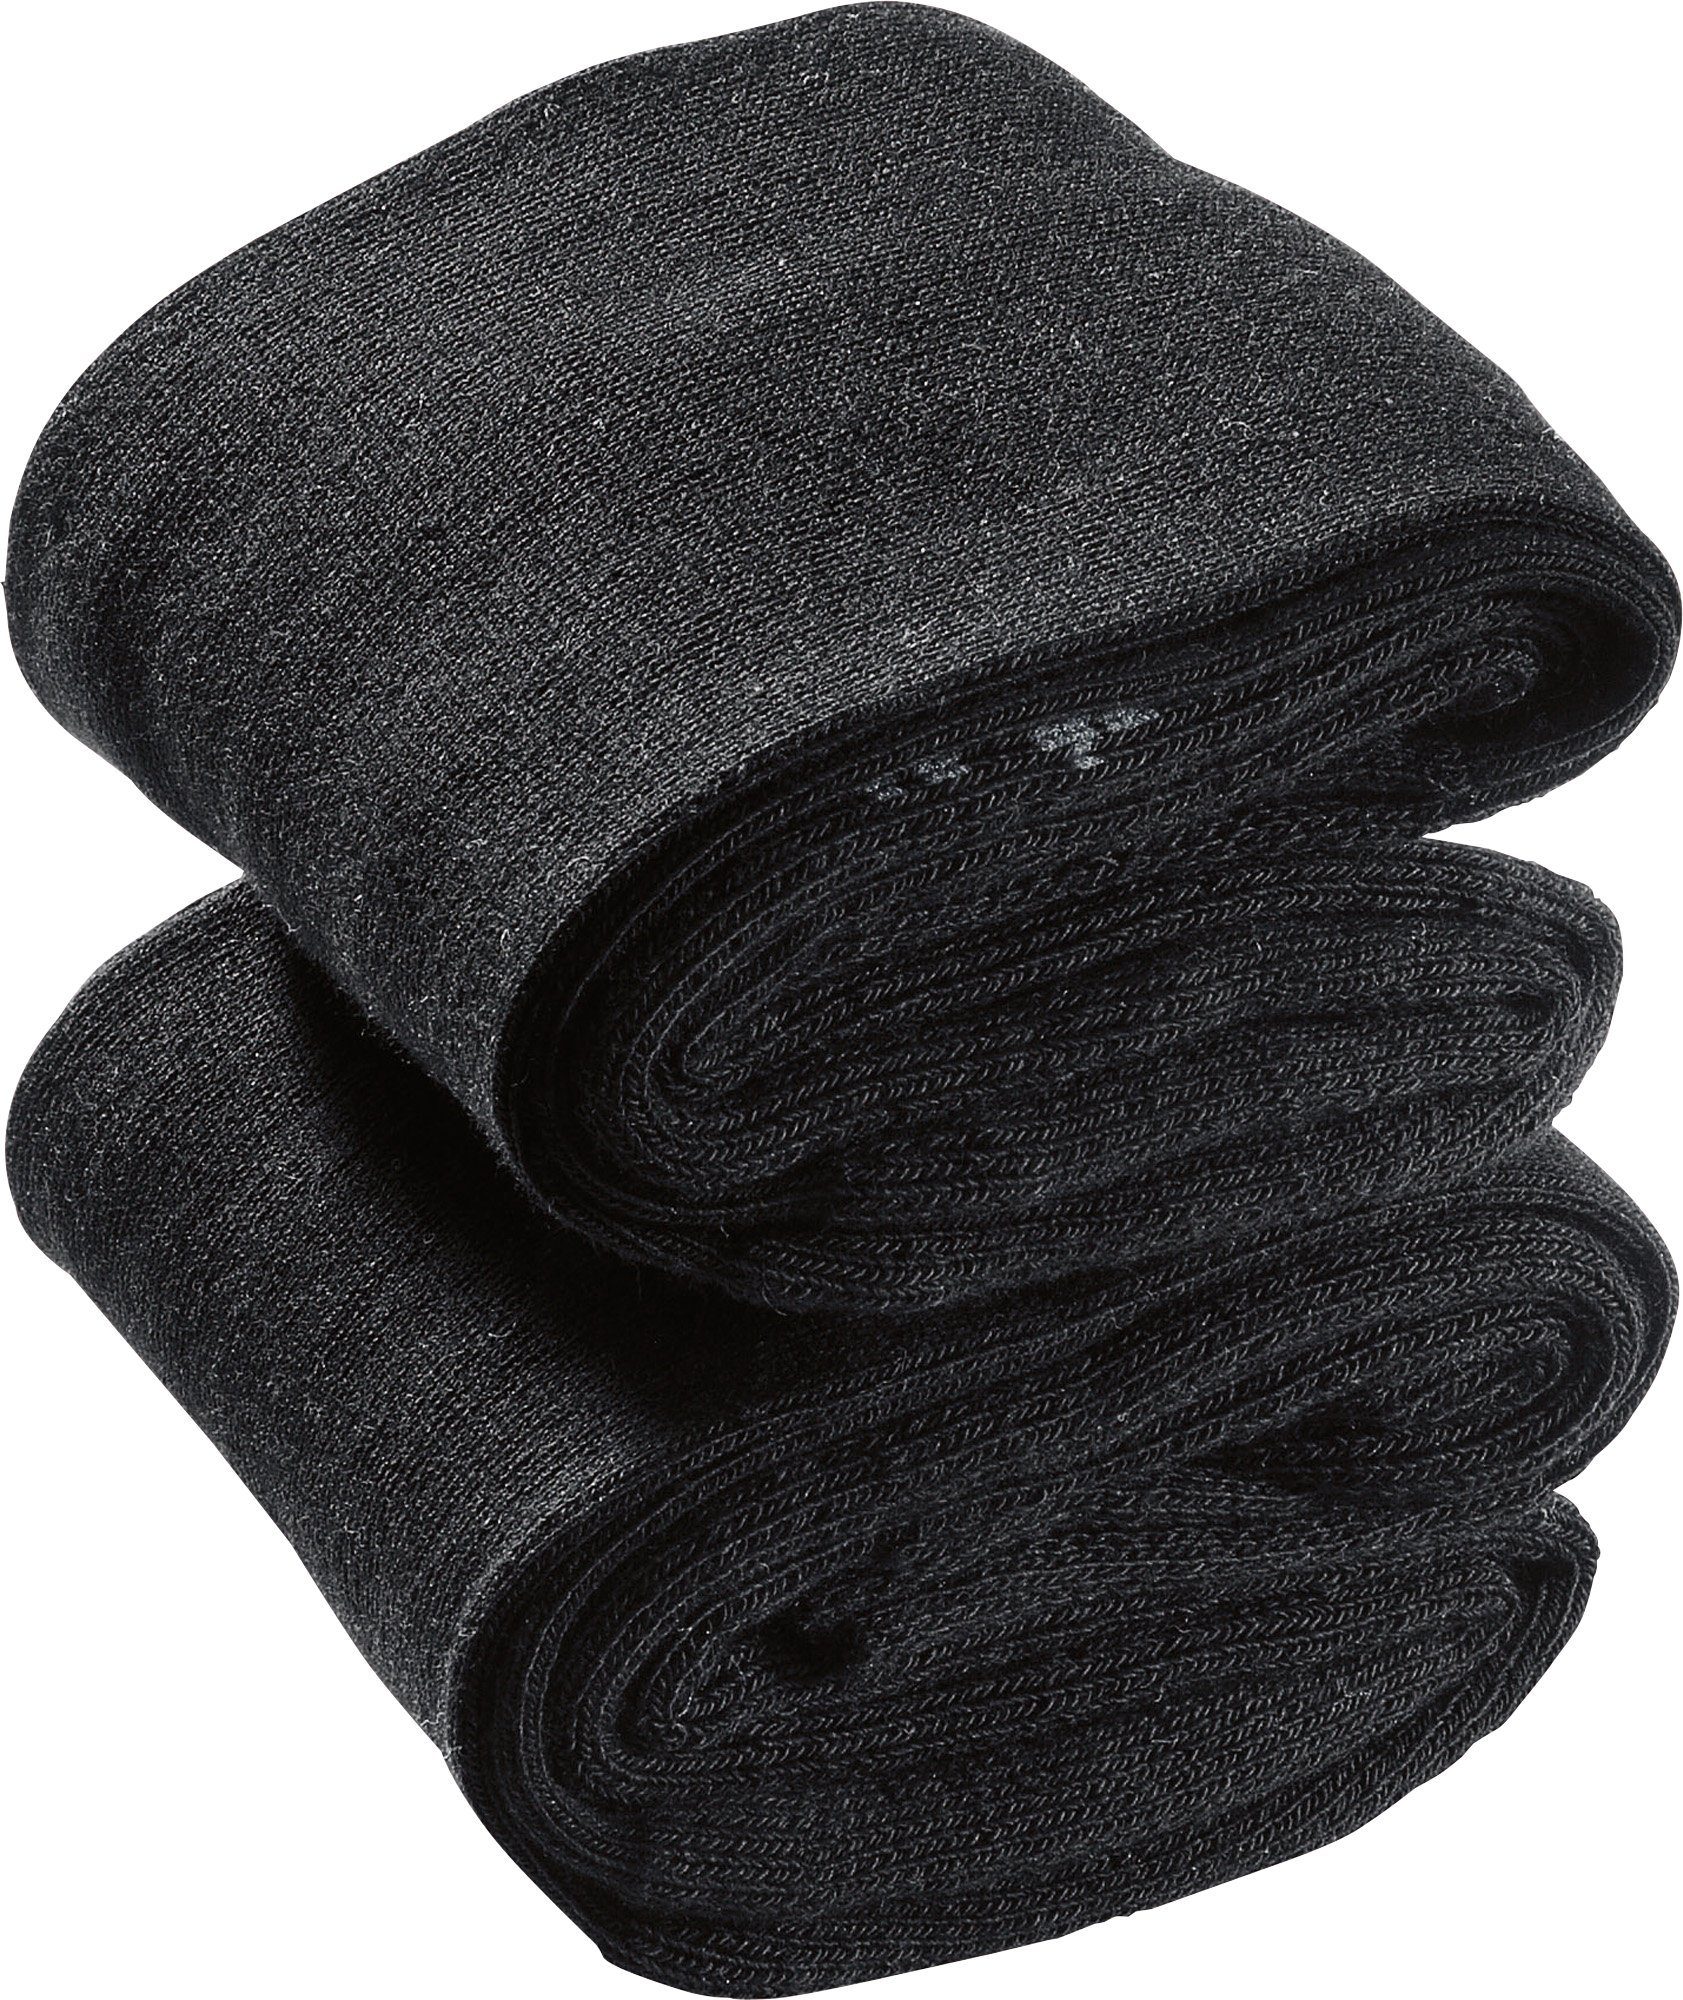 Camano Socken Unisex-Socken 2 mit Uni schwarz Paar Softbund